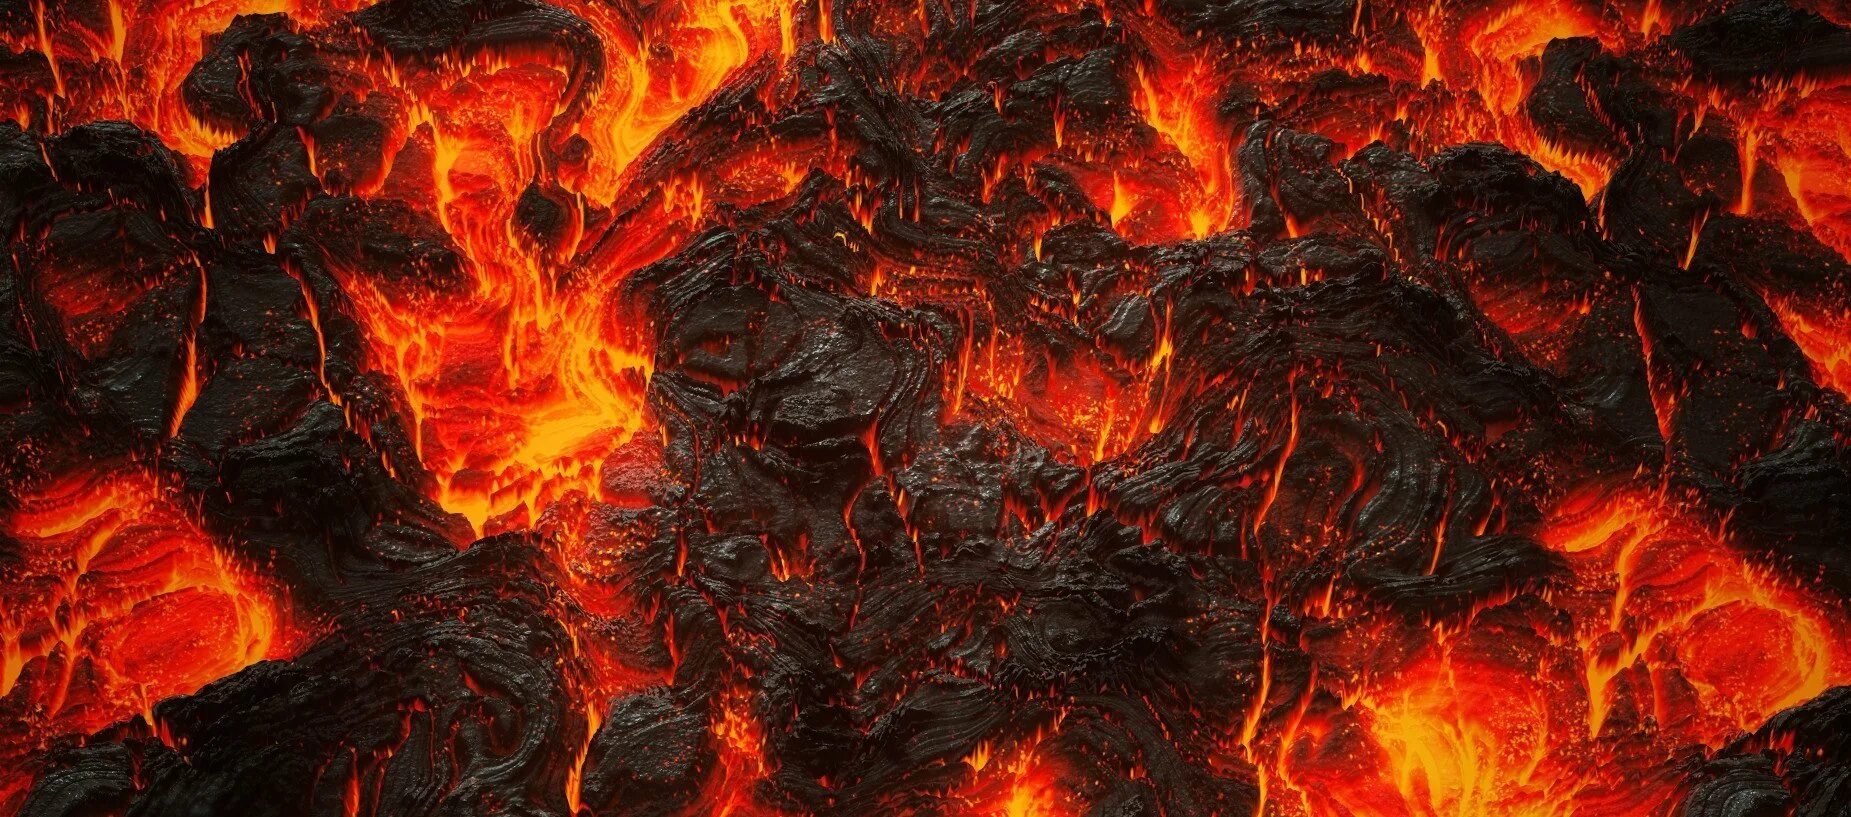 Магма трещины. Глент лава лава. Камни лава магма. Лава лава а4 сыромонстры. Огненная лава Огненная лава Огненная лава.